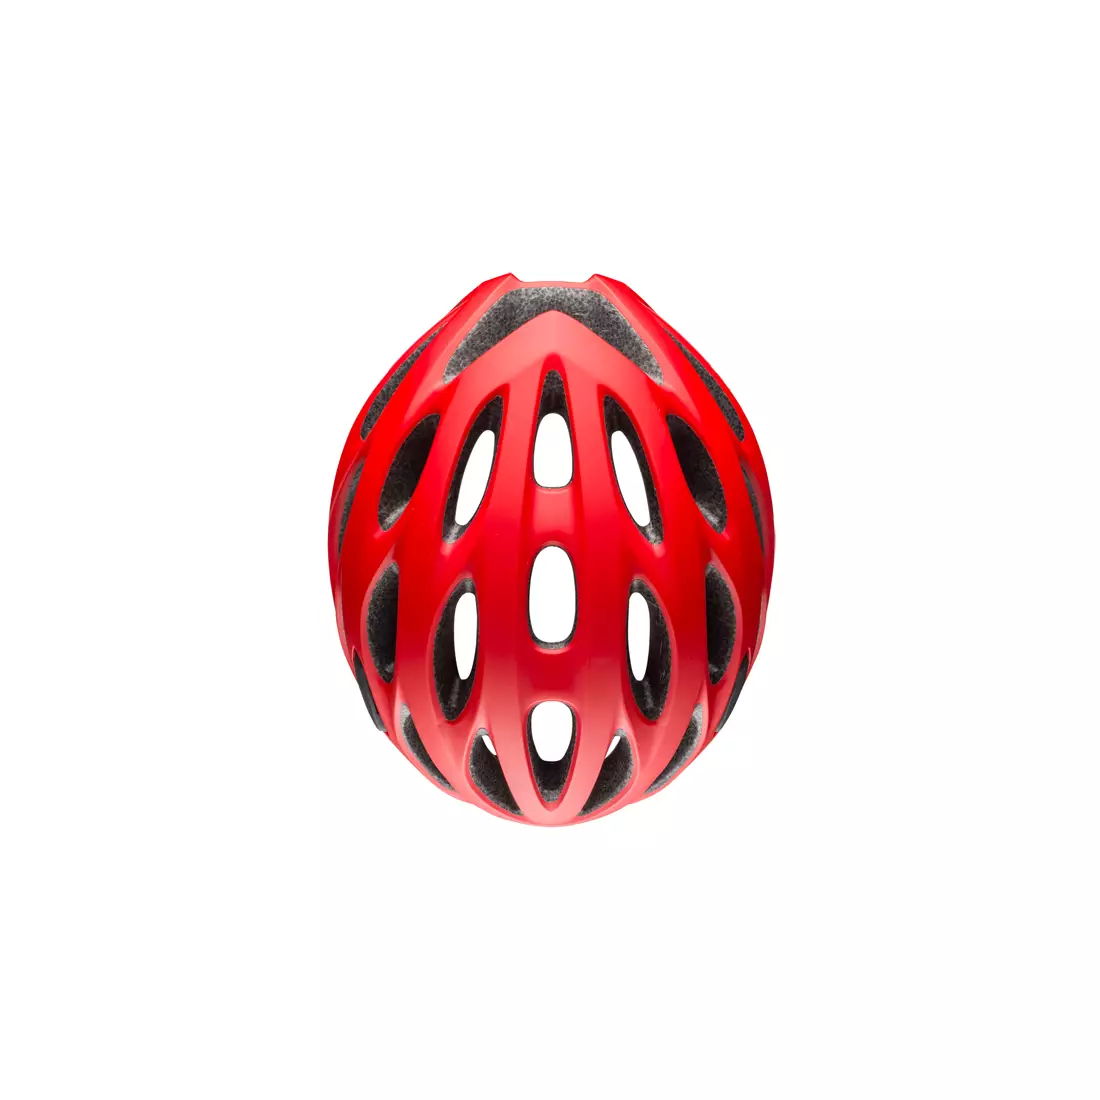 BELL TRACKER R - BEL-7095371 - red matte bicycle helmet